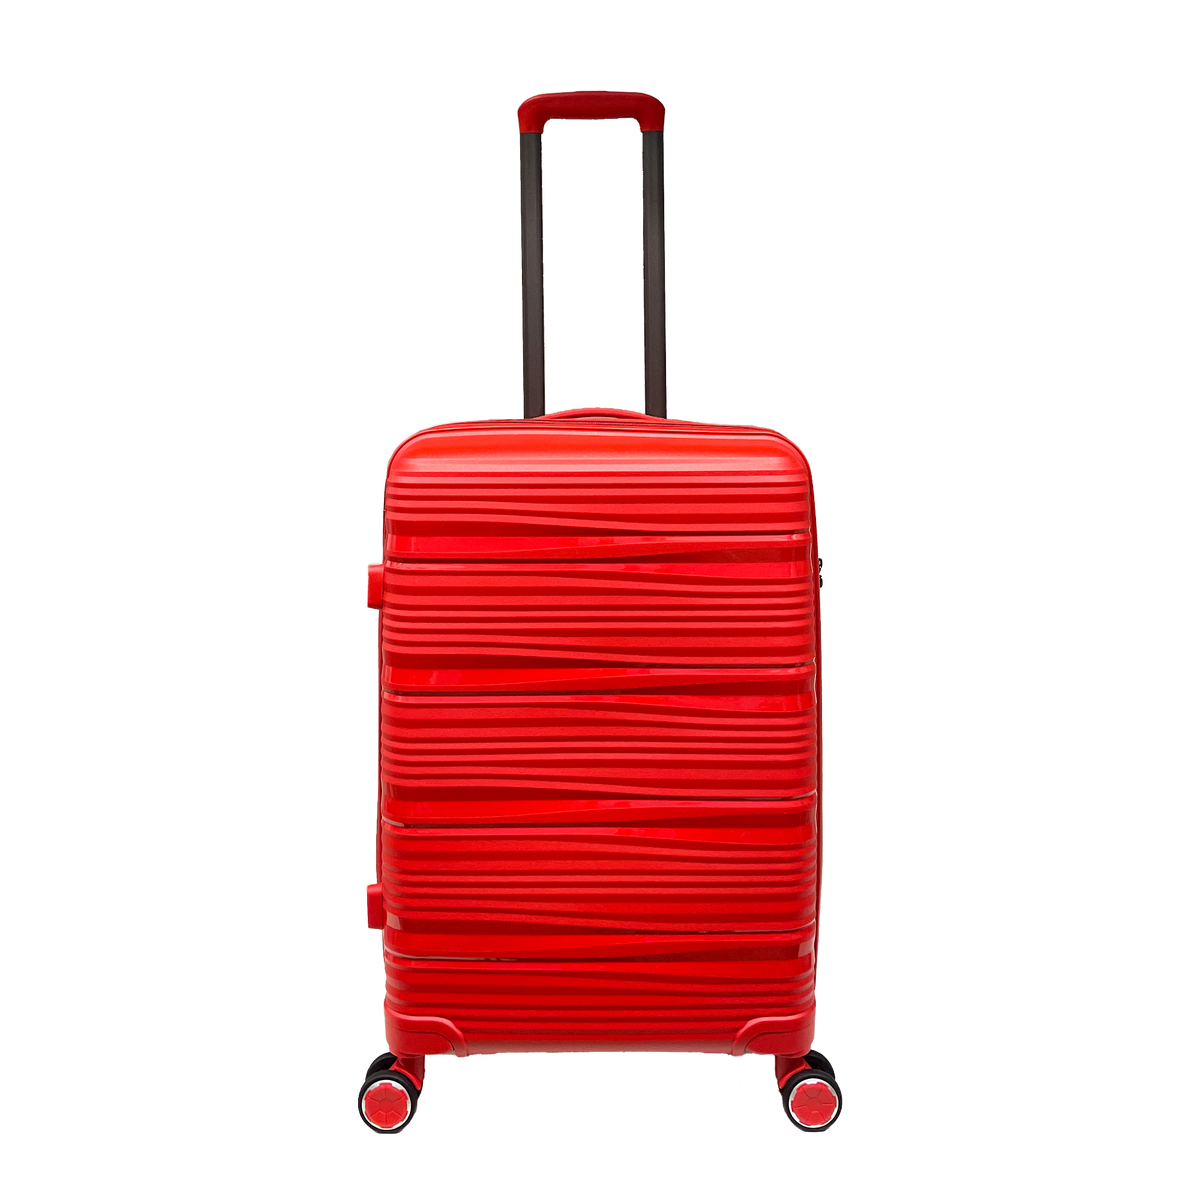 Średnia odporność na walizkę polipropylenową na zintegrowane kłódka TSA